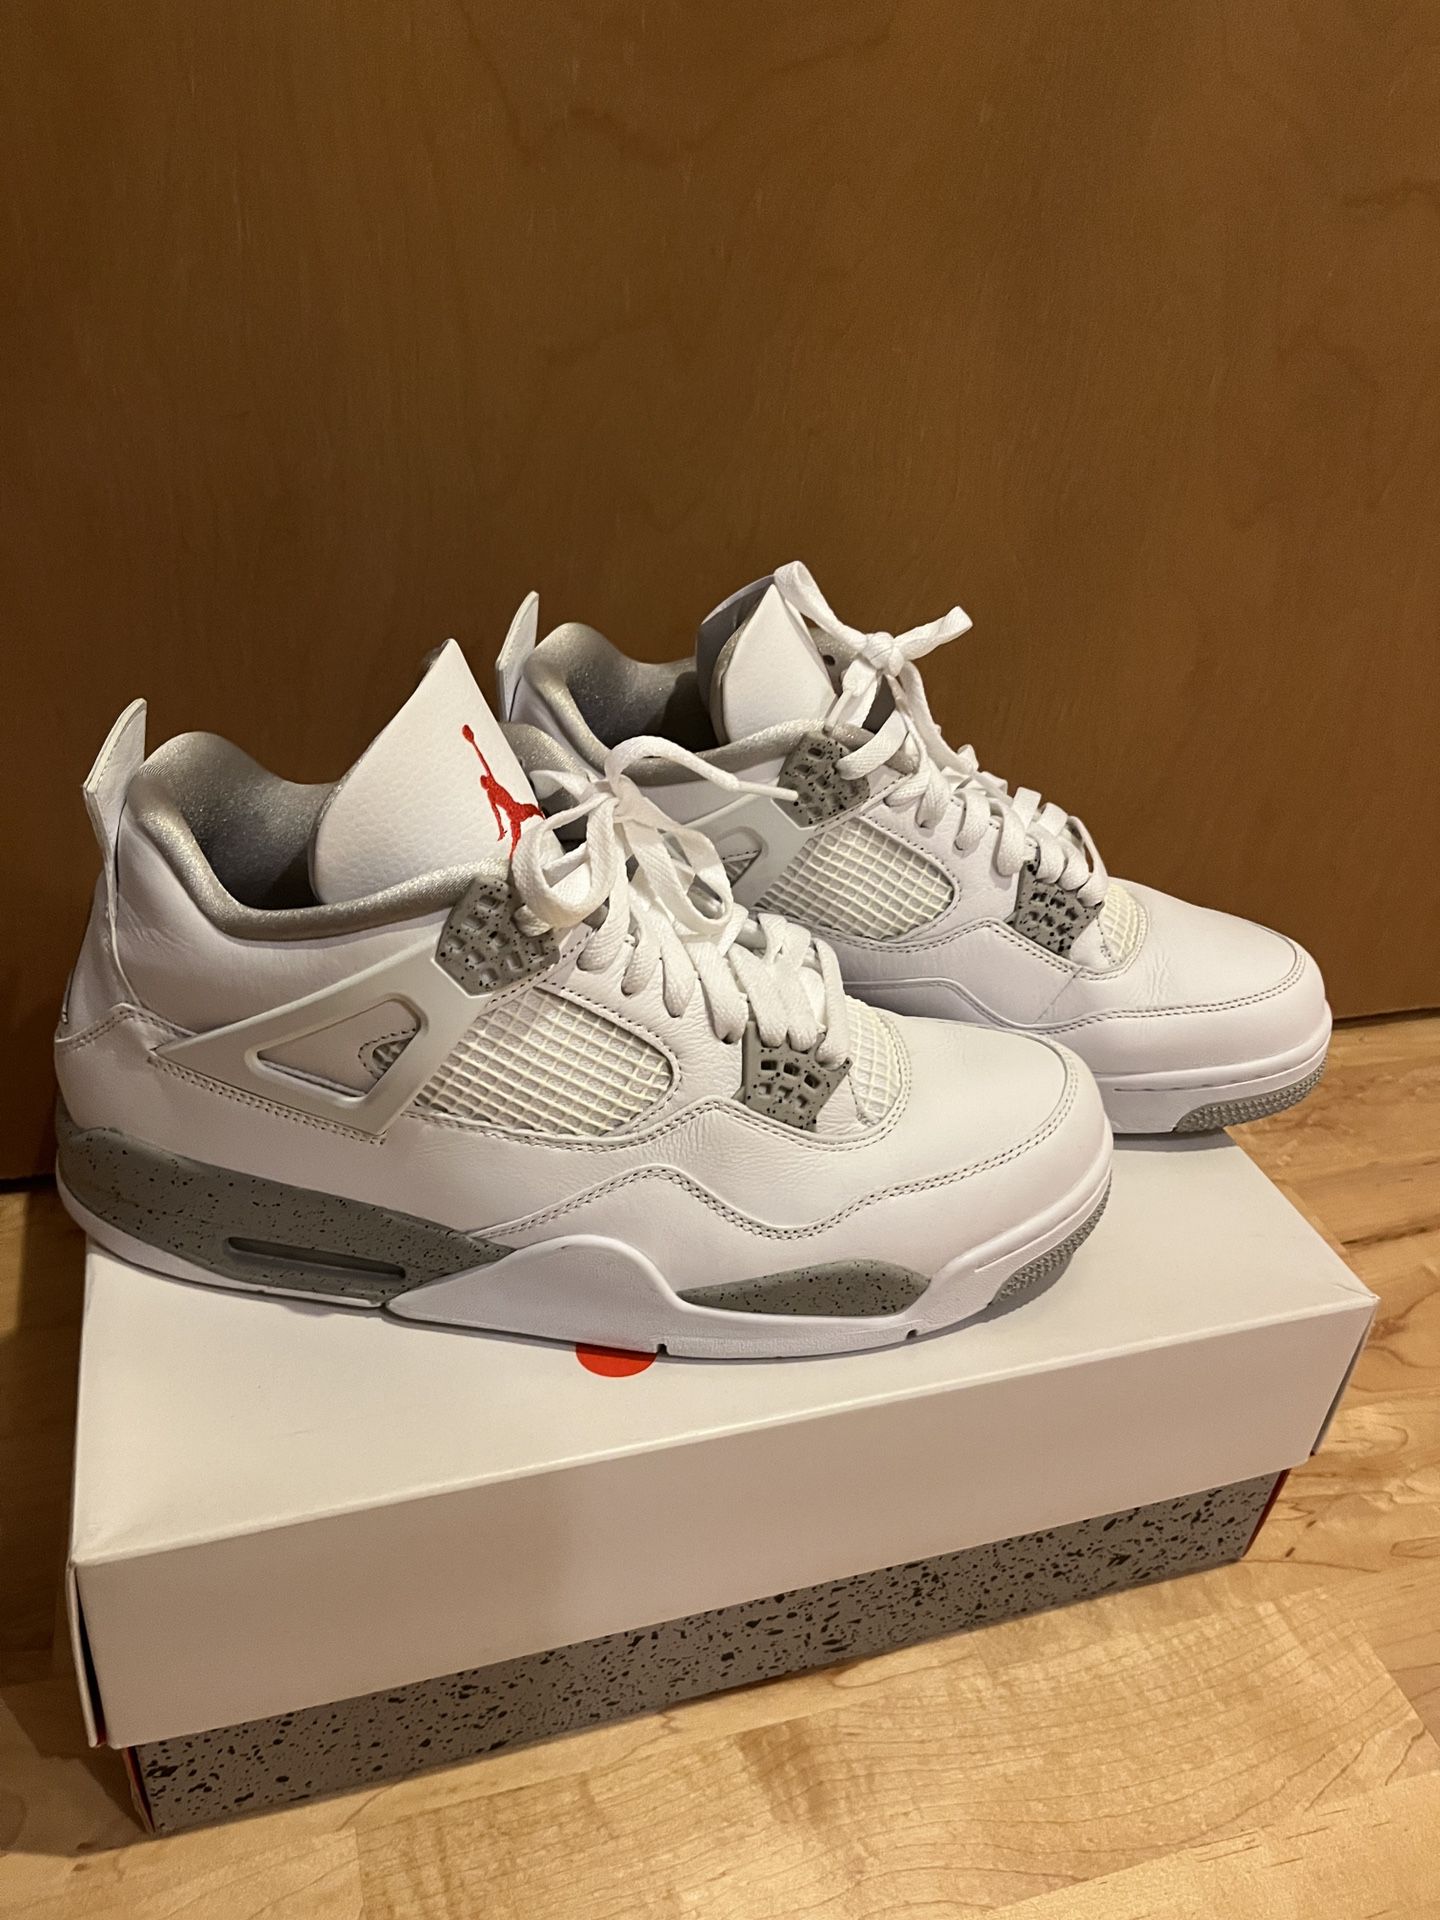 Air Jordan 4 White Oreo Size 13